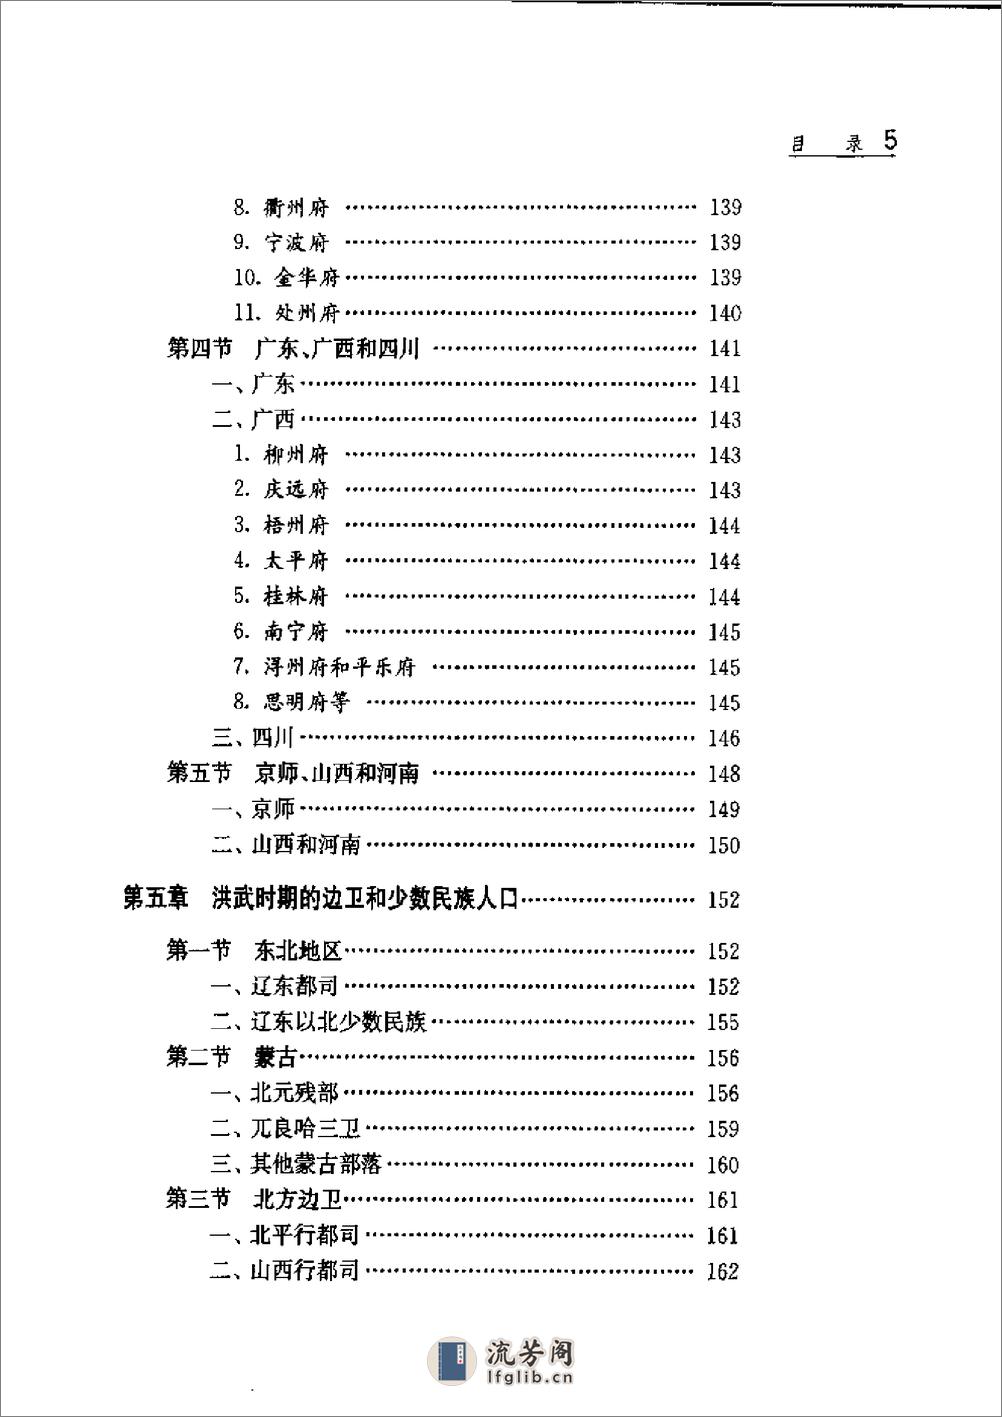 中国人口史 第4卷 明时期 - 第10页预览图